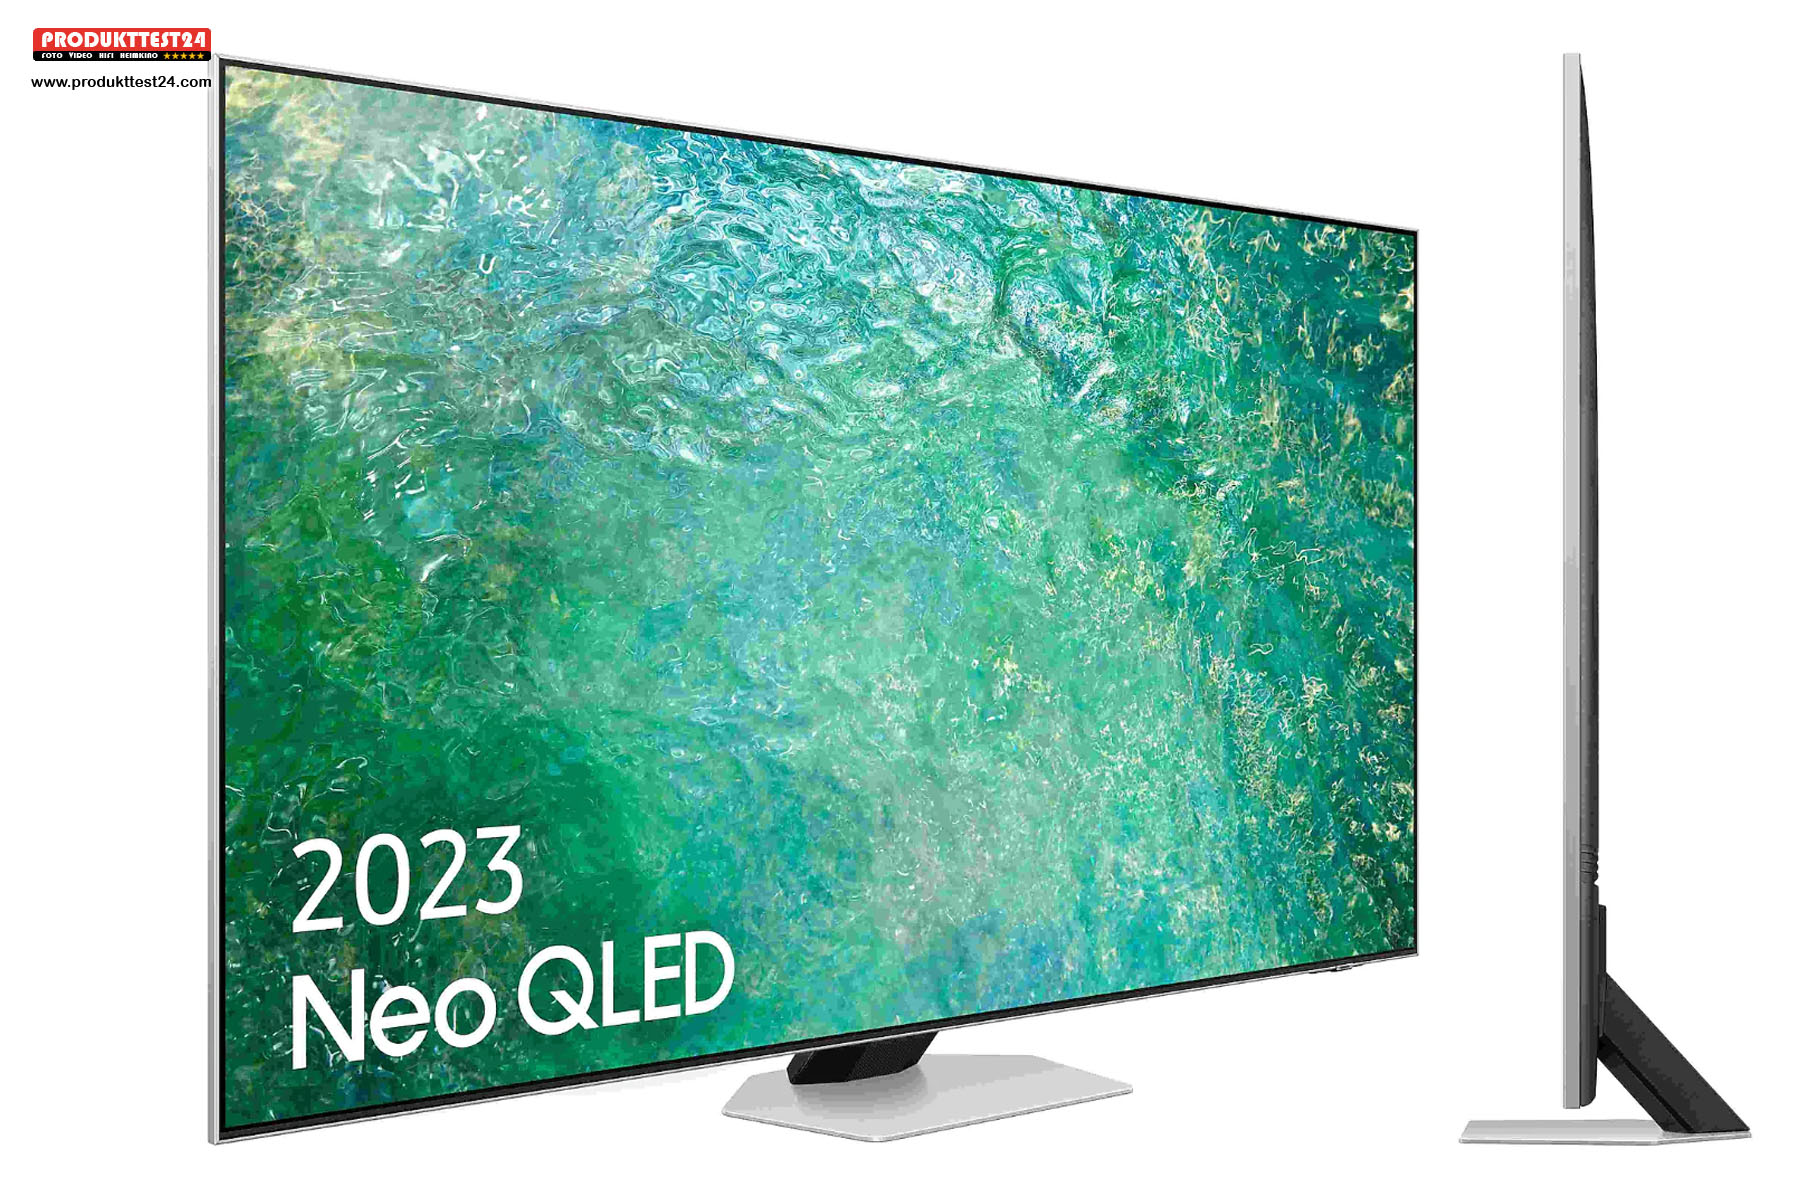 Der Samsung GQ75QN85C Neo QLED 4K-Fernseher mit 189 cm Bilddiagonale und Mini-LED-Technik